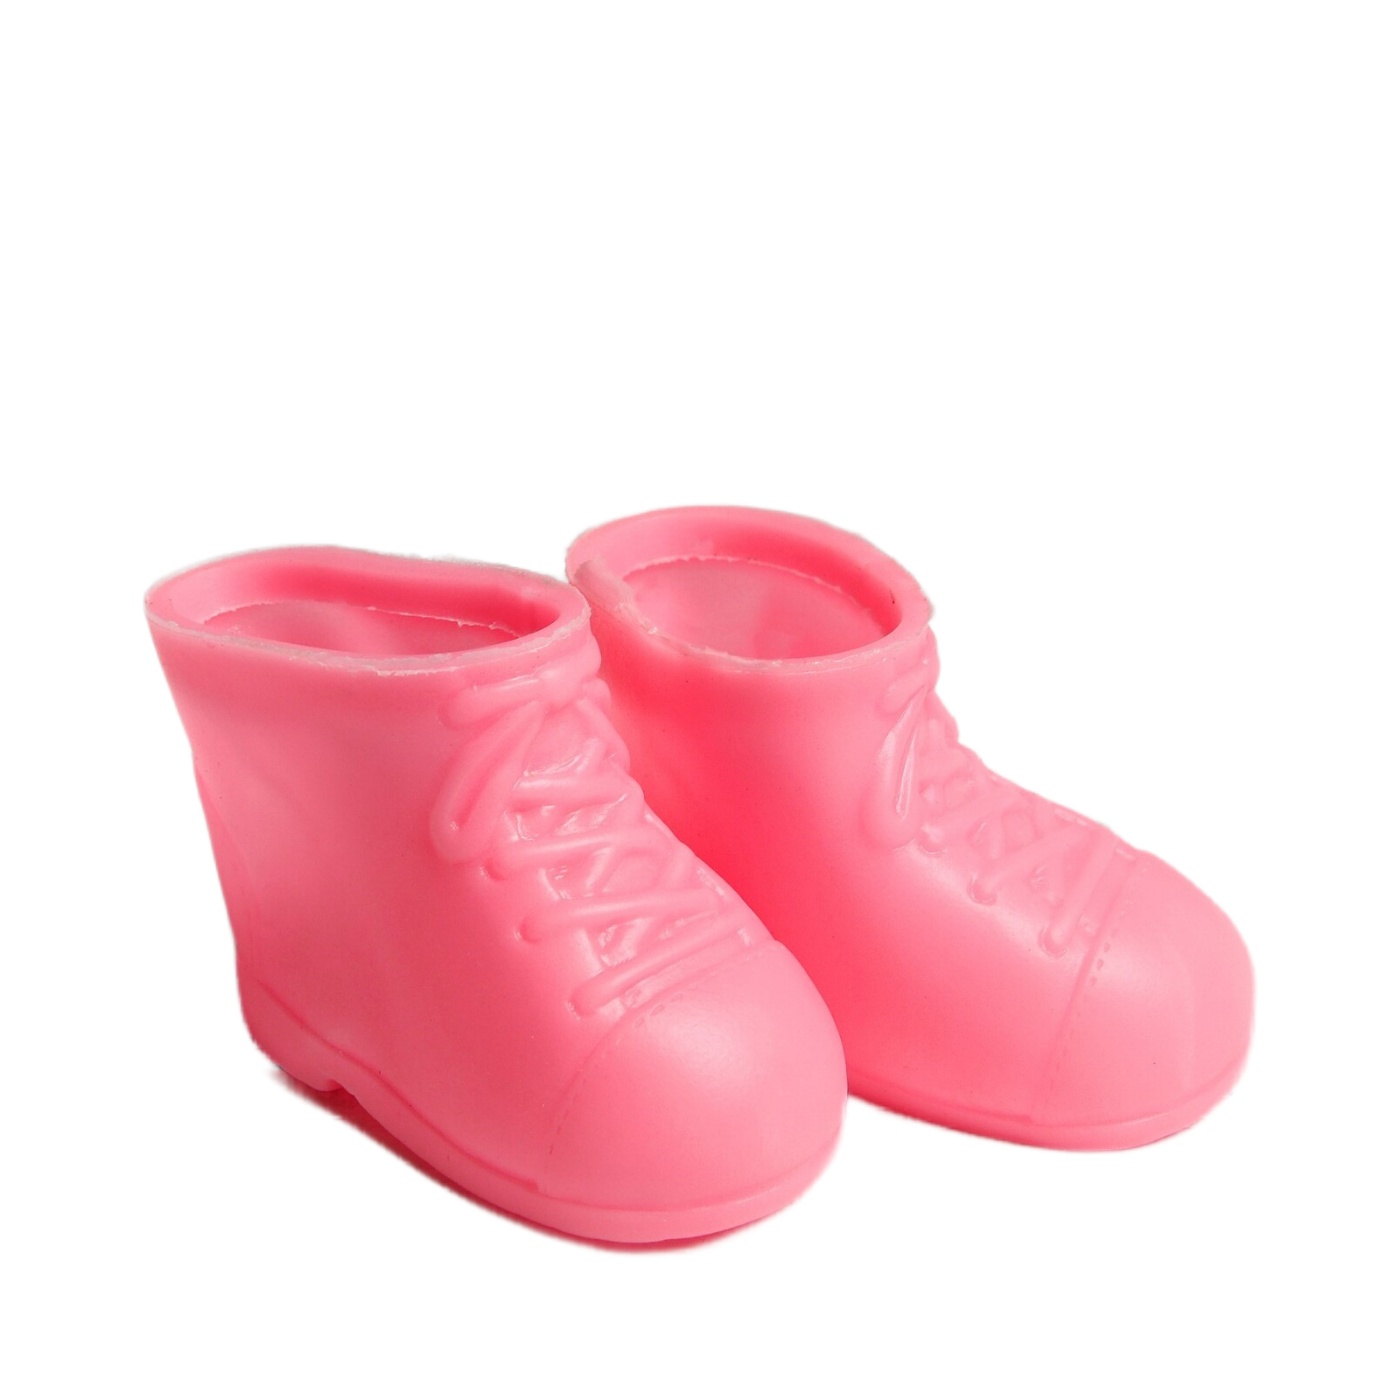 КНР Ботинки Бантики, длина подошвы 6,5 см, 1 пара, розовые